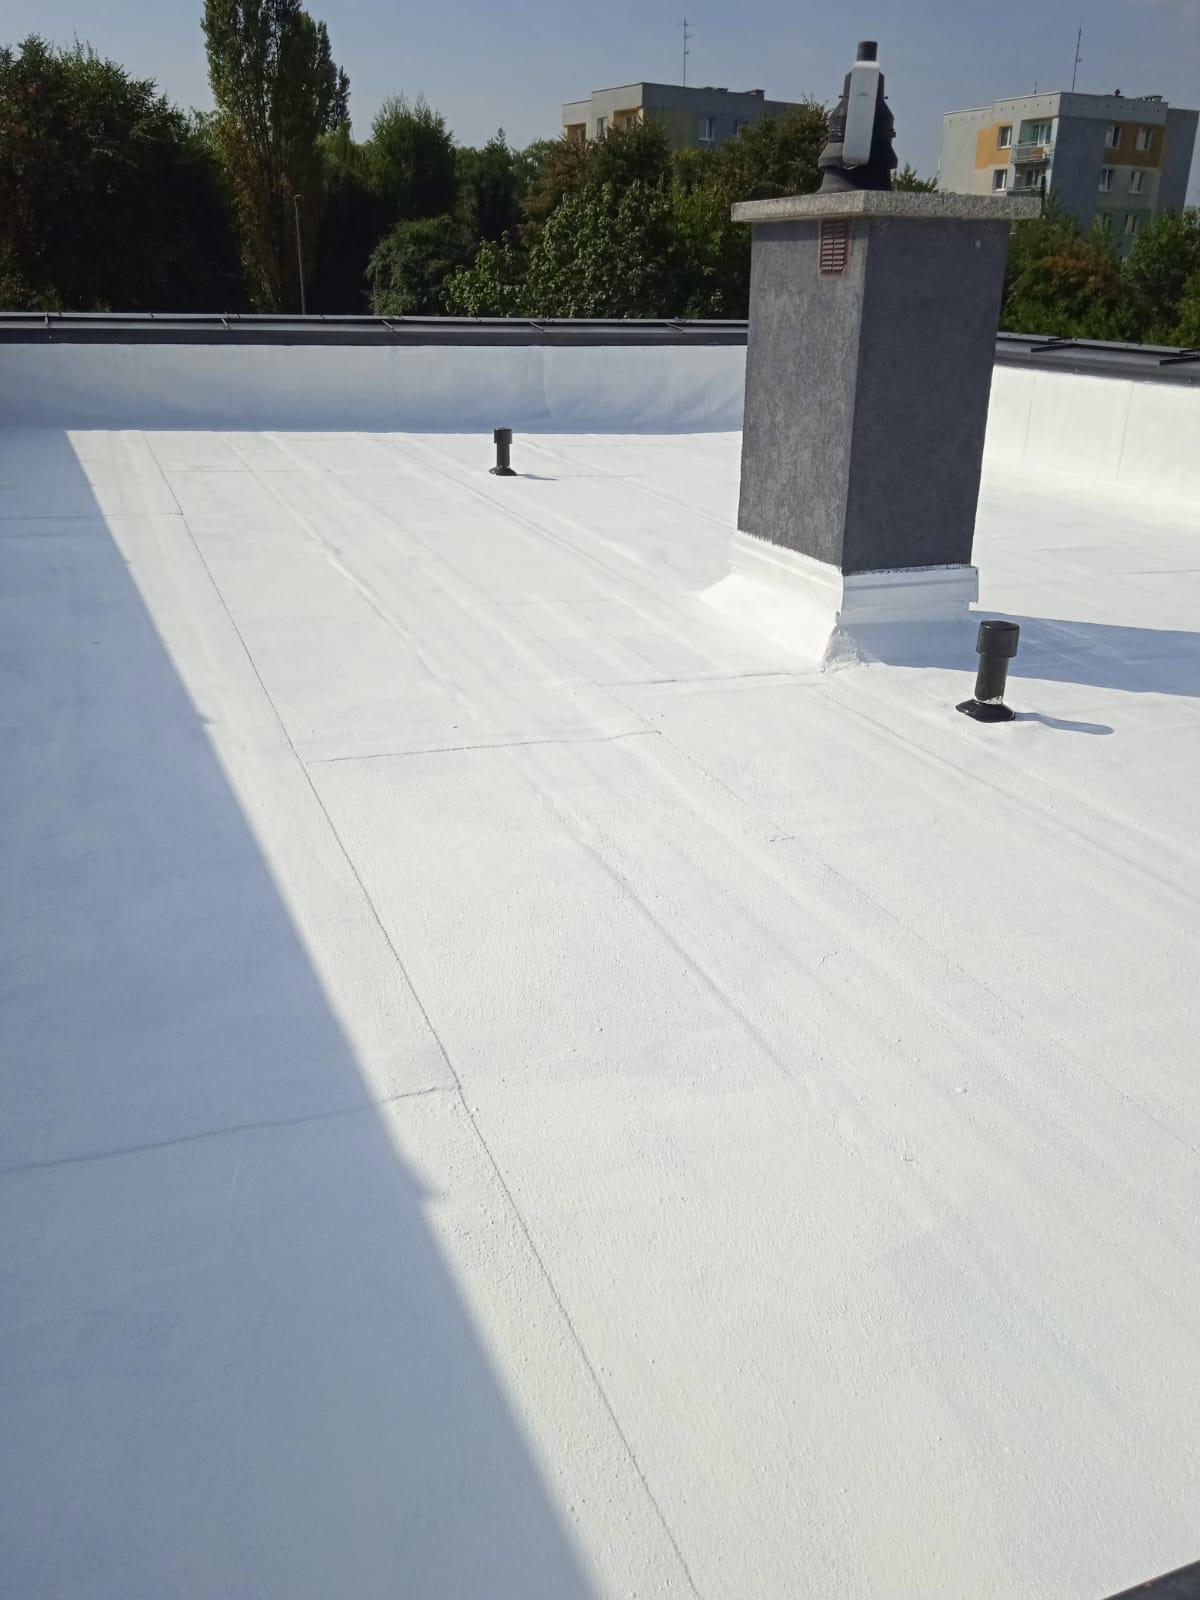 Remont dachu z papy, betonu, membrany PCV, za pomocą  pokrycia Cool-R, DZIERZONIOW, dolnośląskie